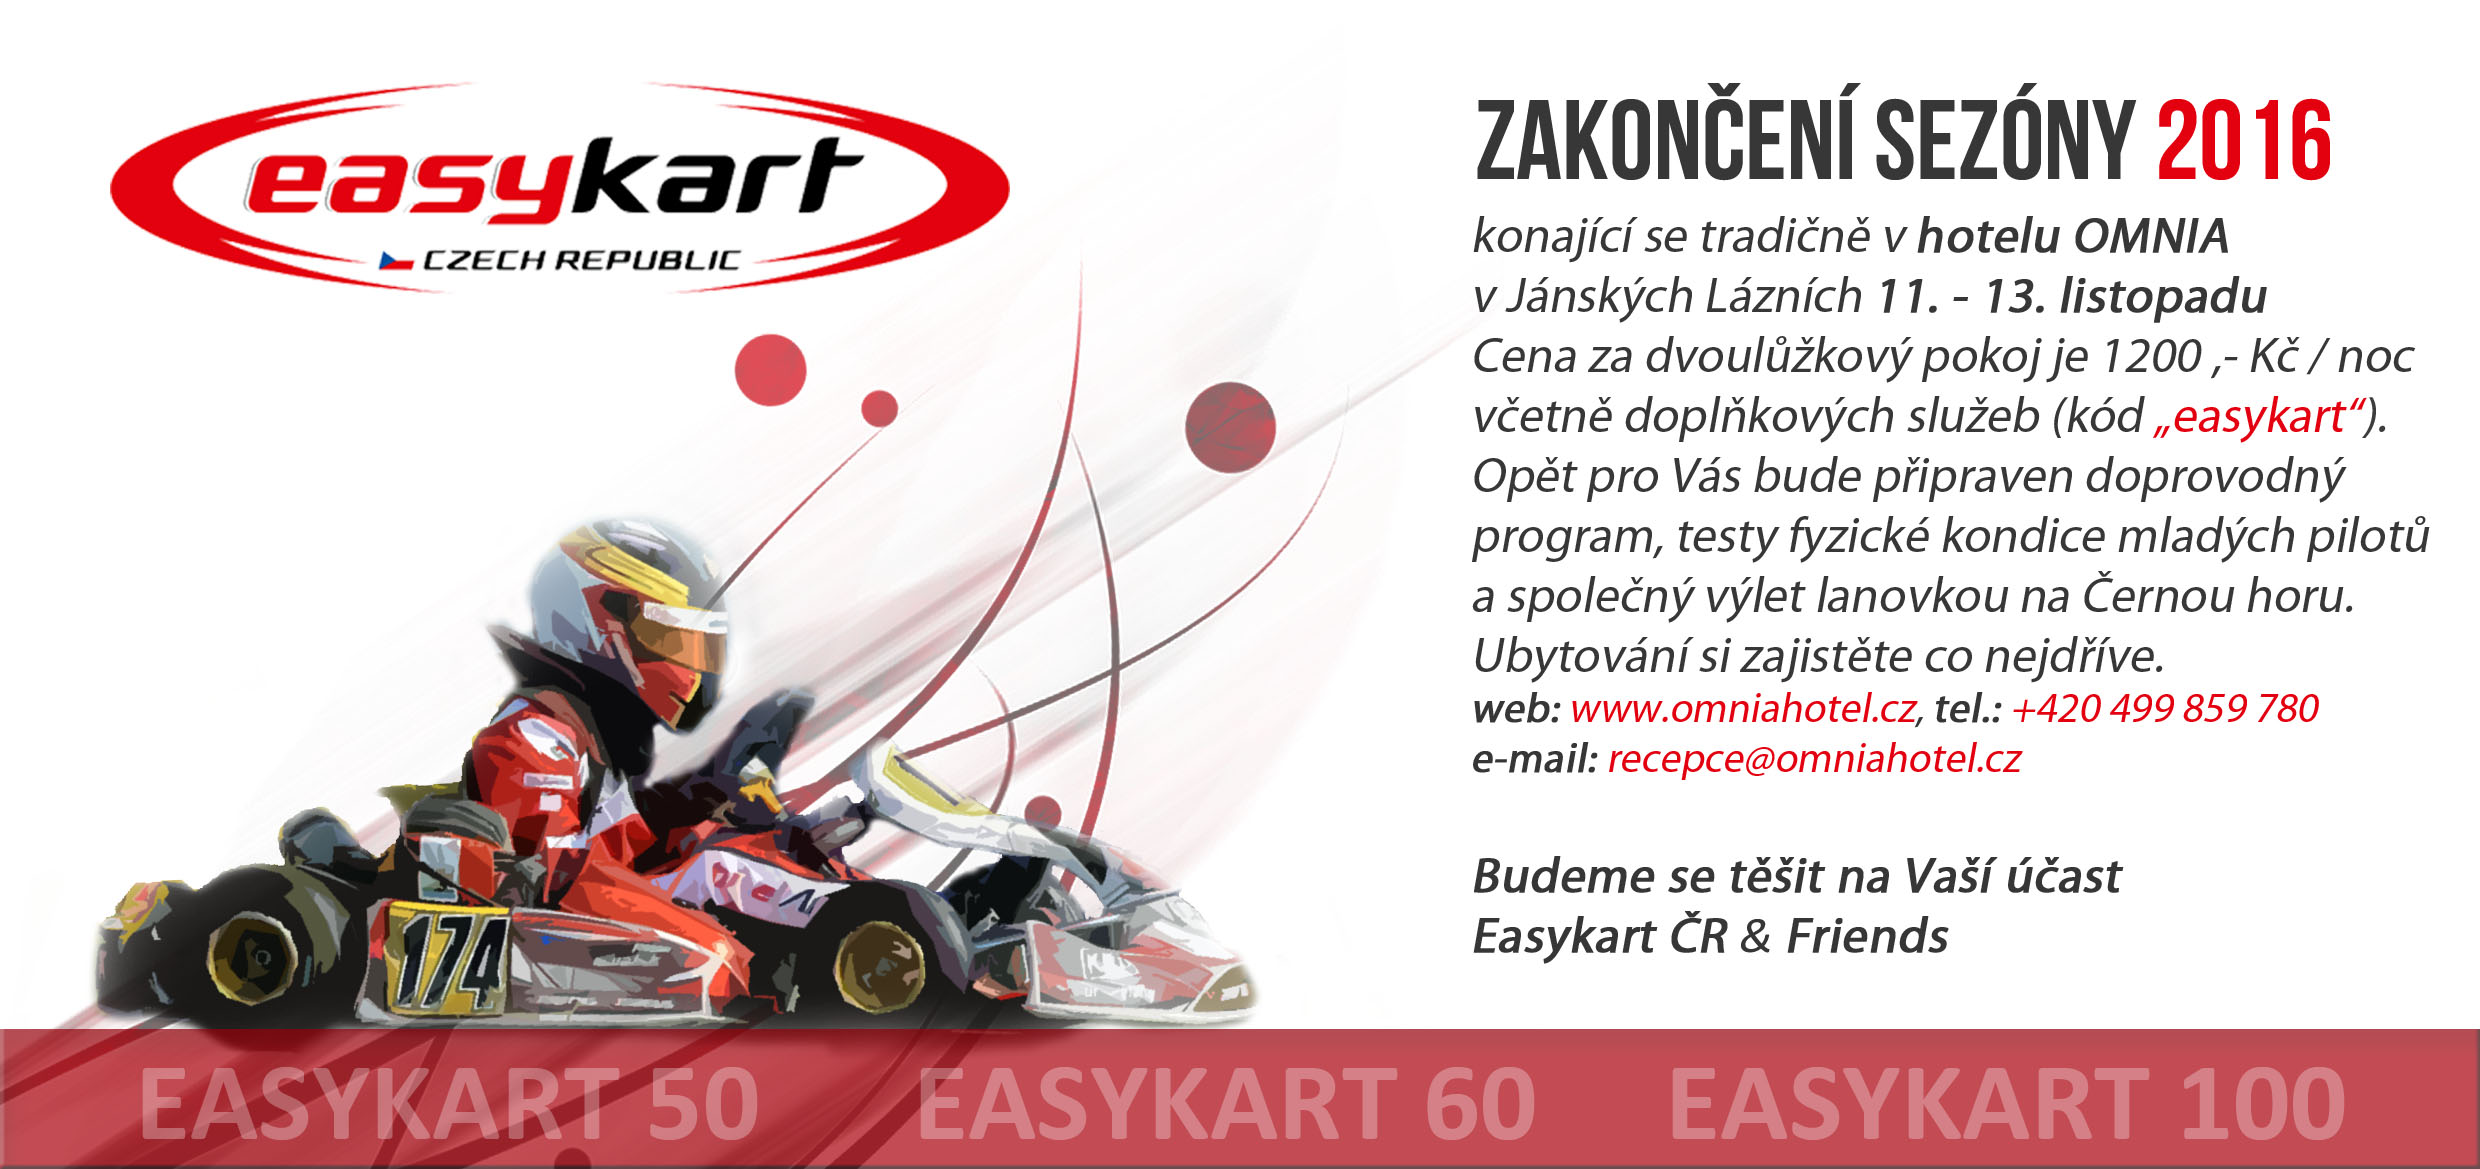 pozvanka-easykart-2016